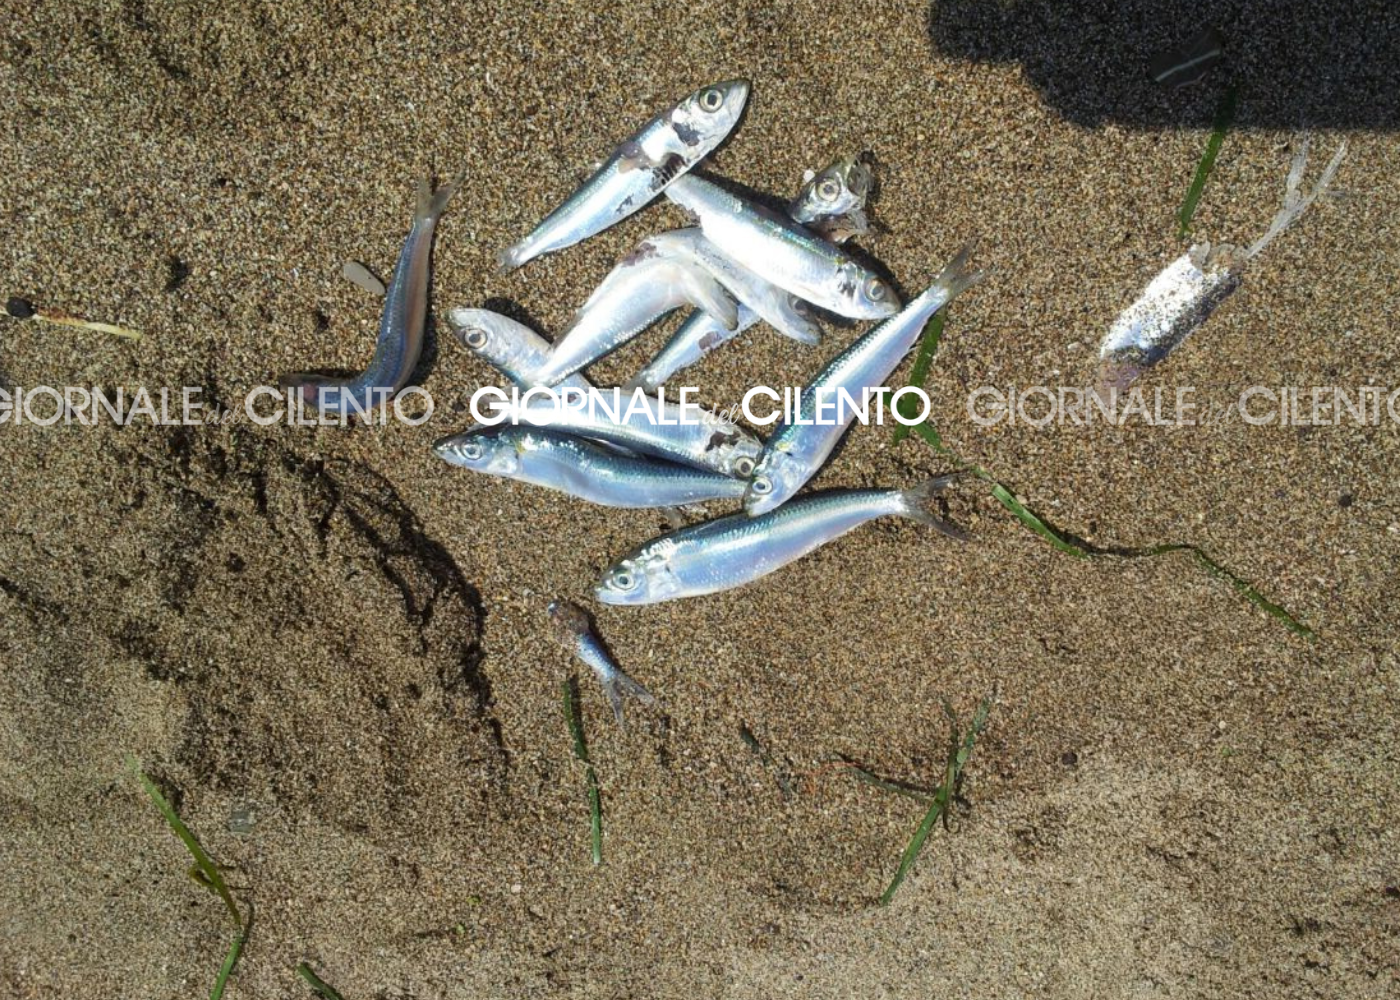 Moria di pesci lungo le spiagge del Cilento: aperte indagini su possibili cause